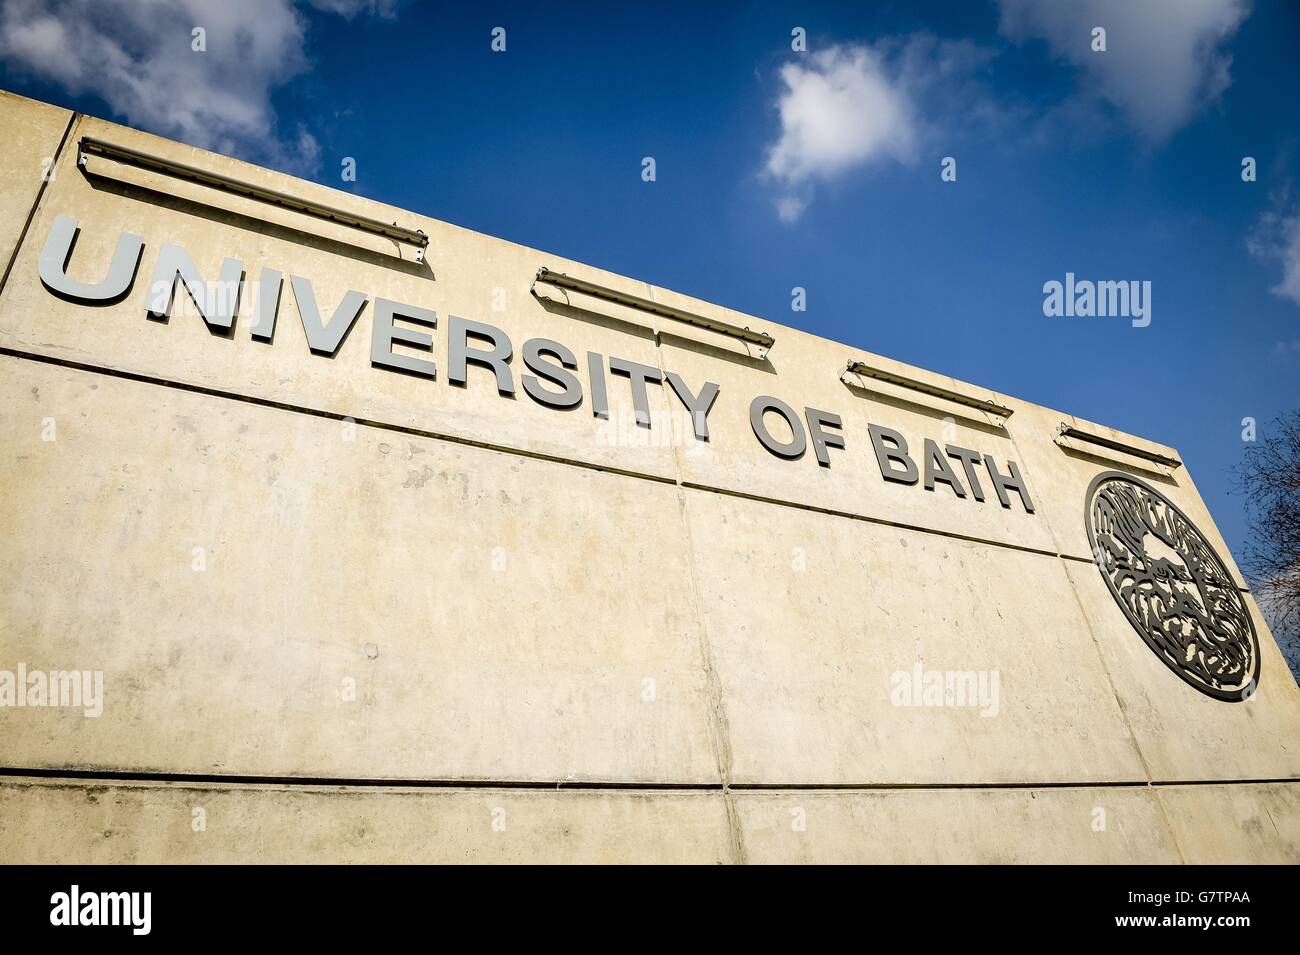 Un panneau à l'Université de Bath, comme une enquête a constaté qu'il offre la meilleure expérience d'étudiant dans le pays. Banque D'Images